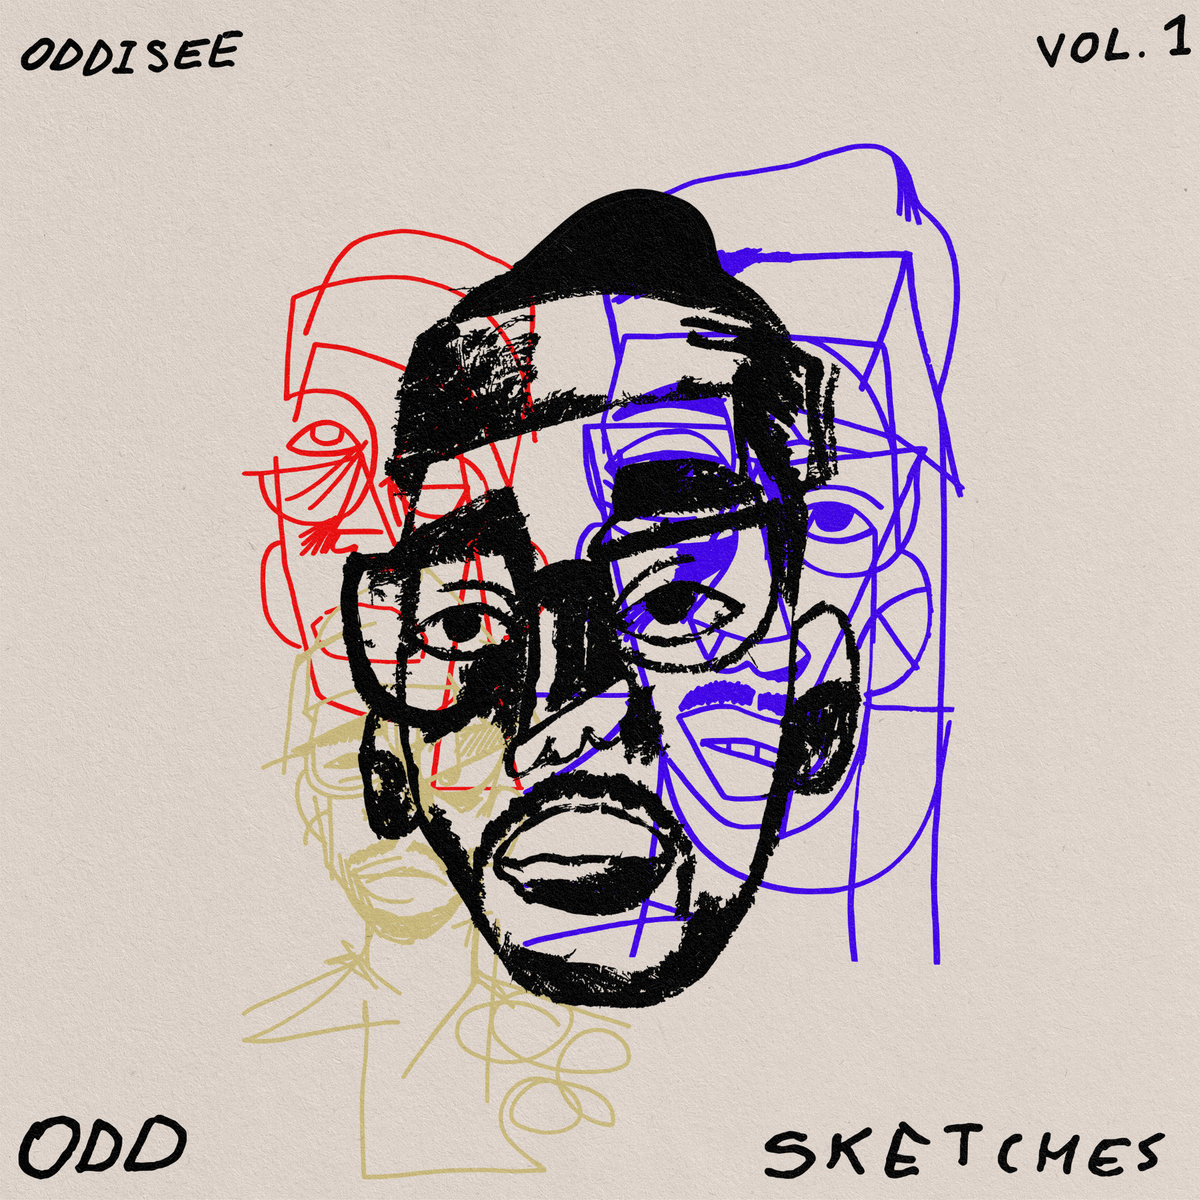 Oddisee-Odd Sketches Vol 1